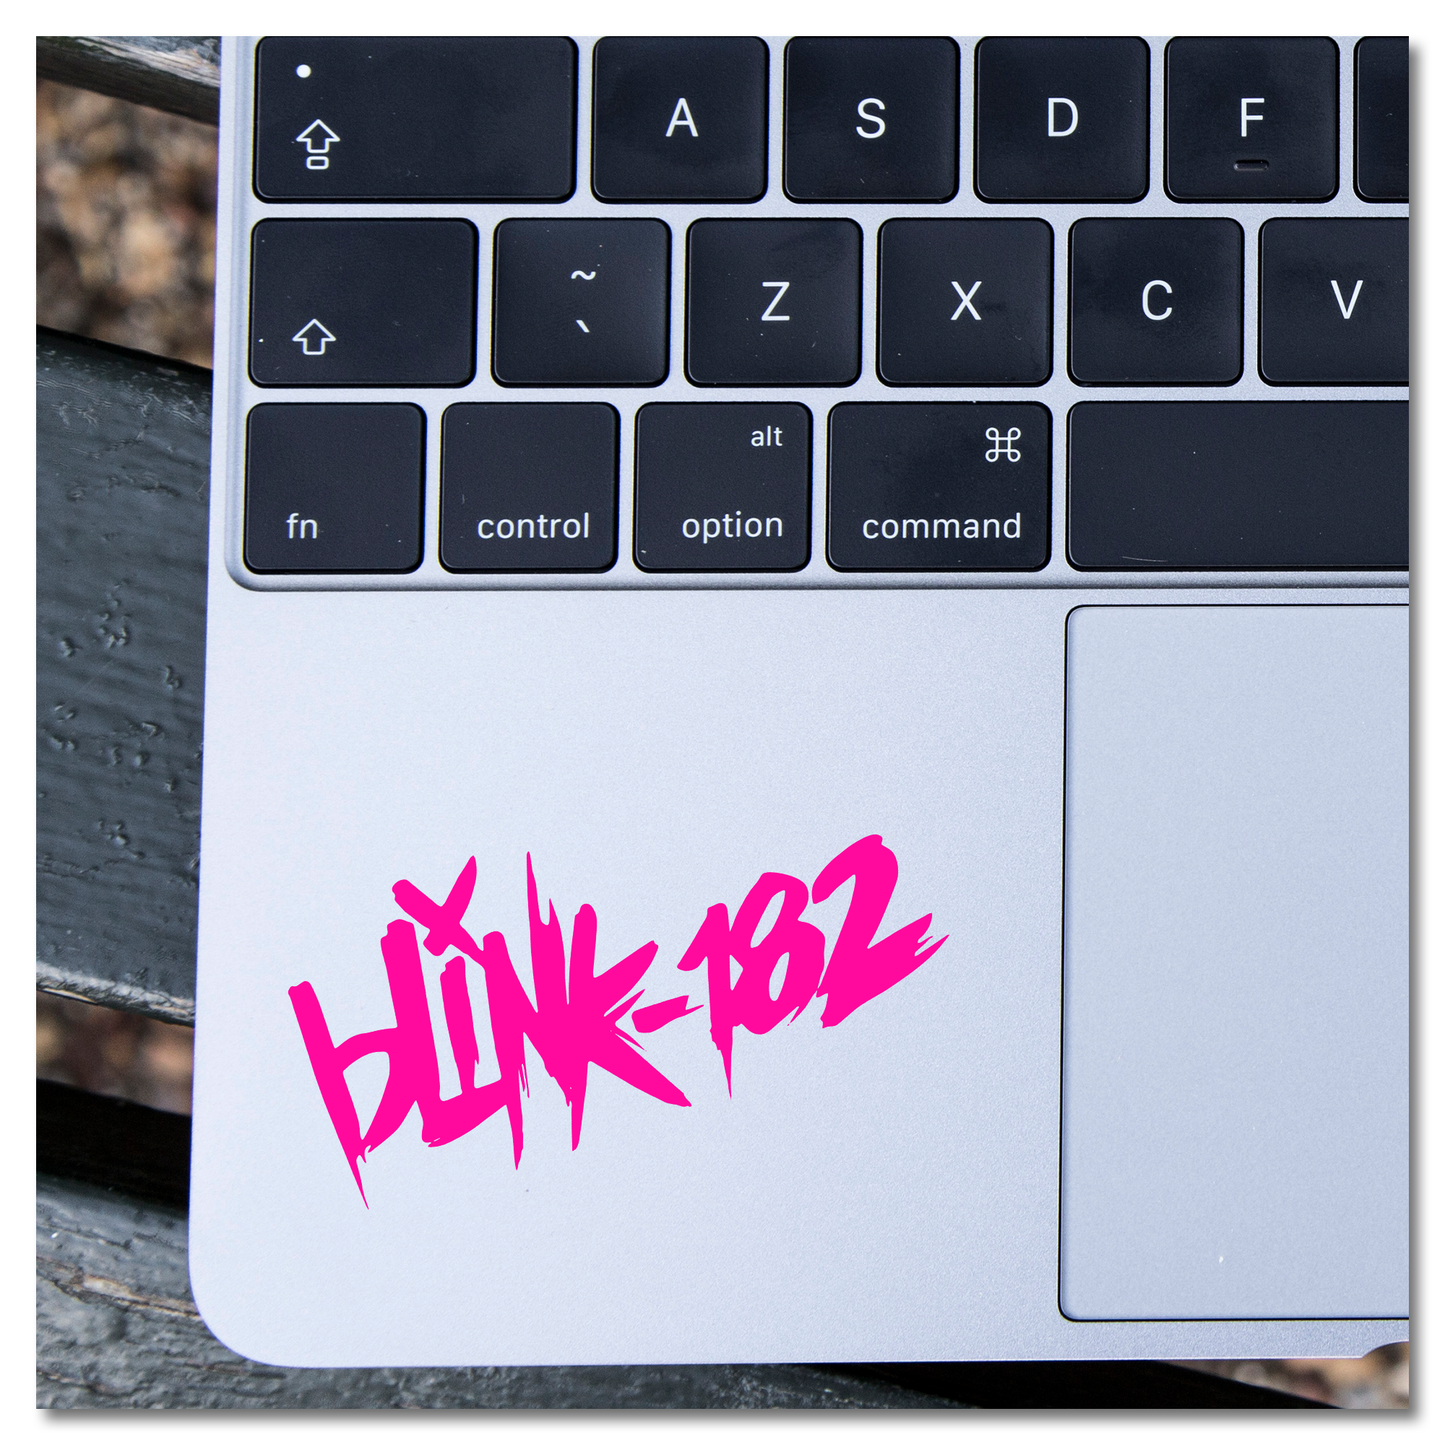 Blink-182 Vinyl Decal Sticker